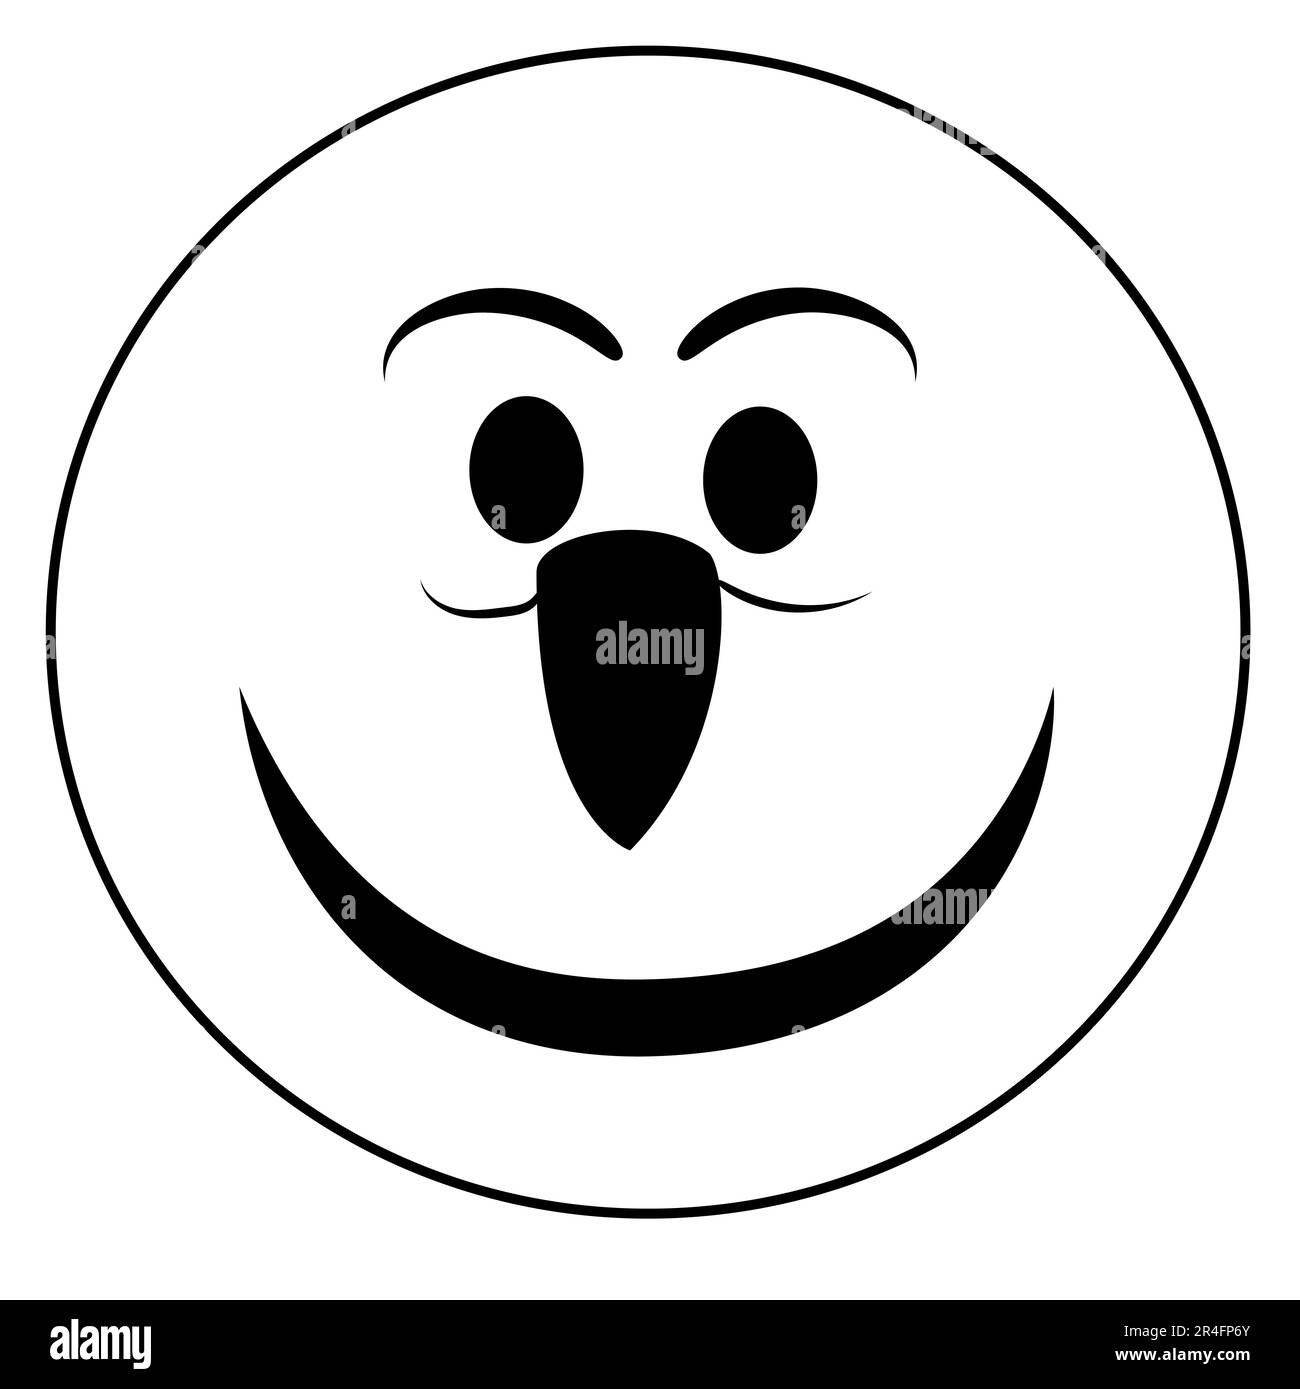 un conjunto de iconos de garabatos emoji que representan varias emociones y estados de ánimo, como la felicidad, la tristeza, la sonrisa y el humor, en forma de caras emoji Foto de stock